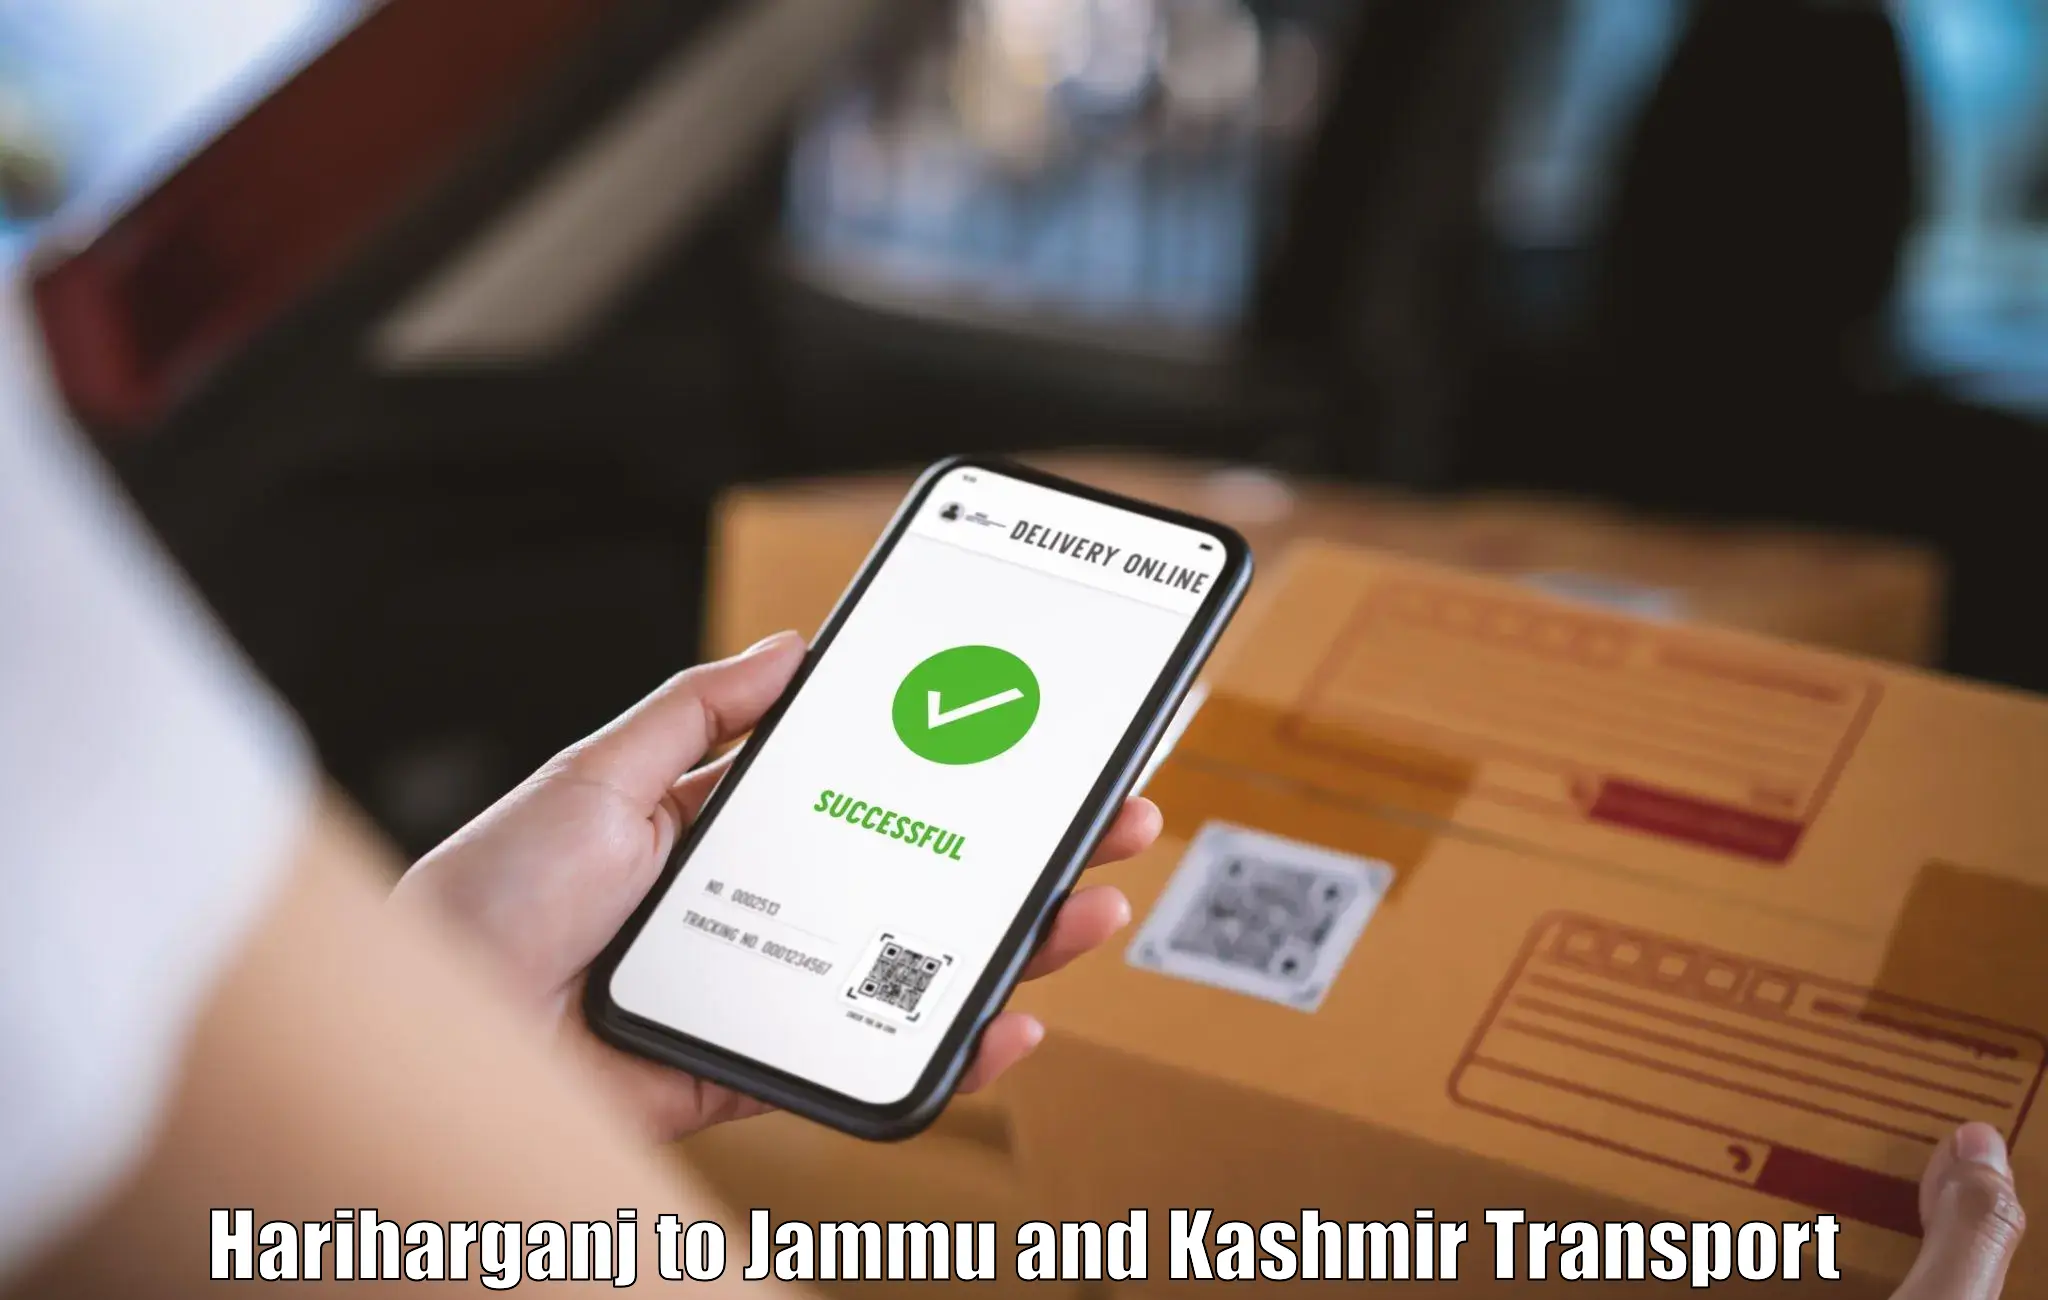 Cargo transport services Hariharganj to Jammu and Kashmir